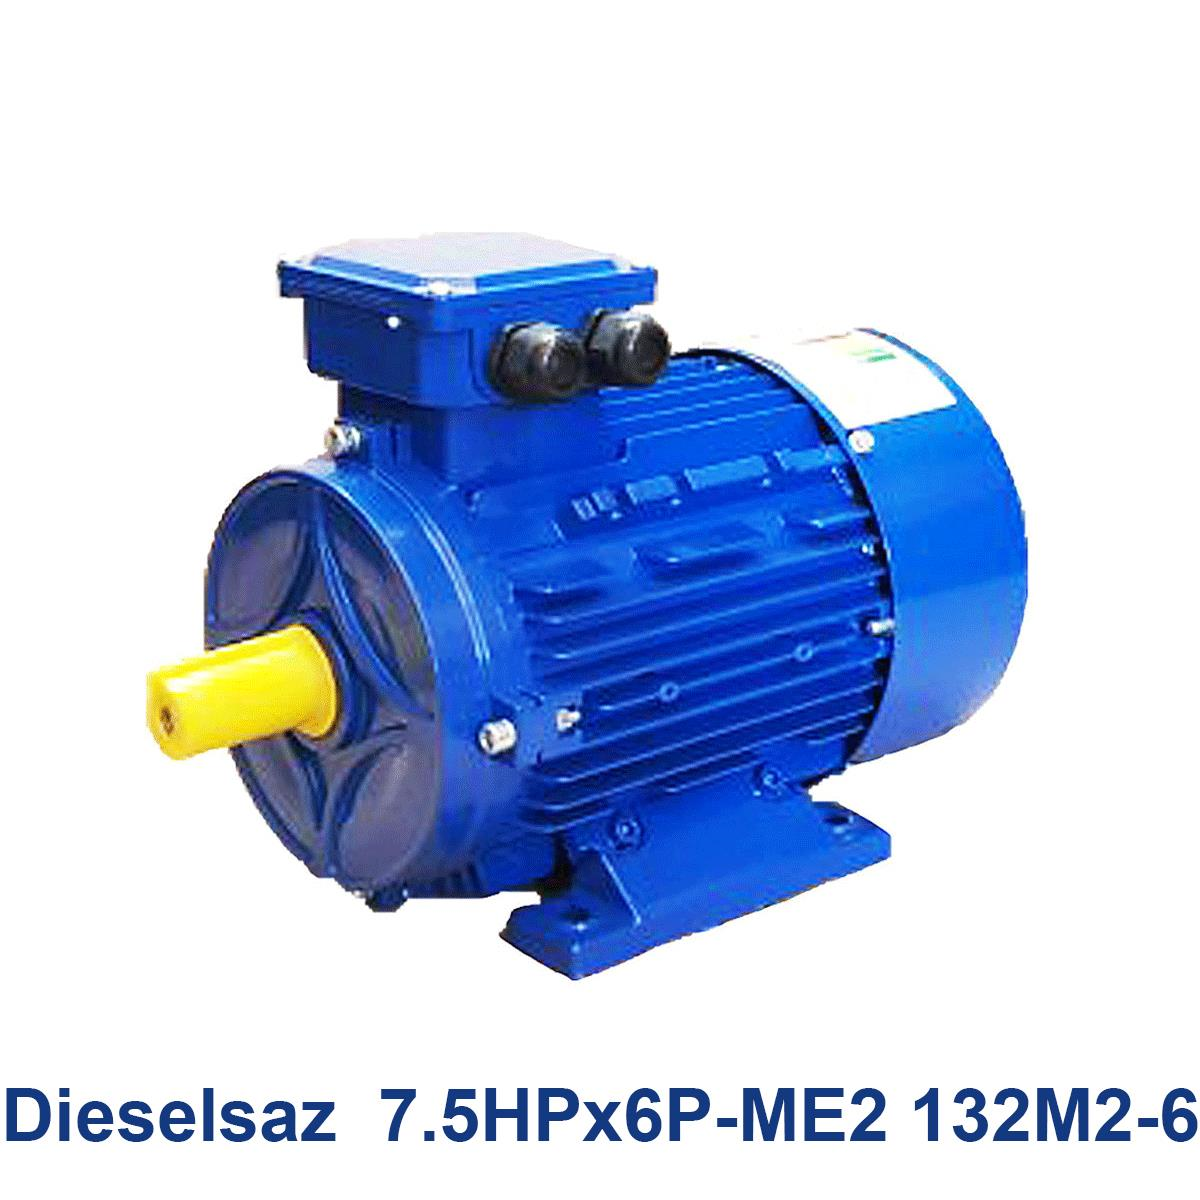 Dieselsaz--7.5HPx6P-ME2-132M2-6